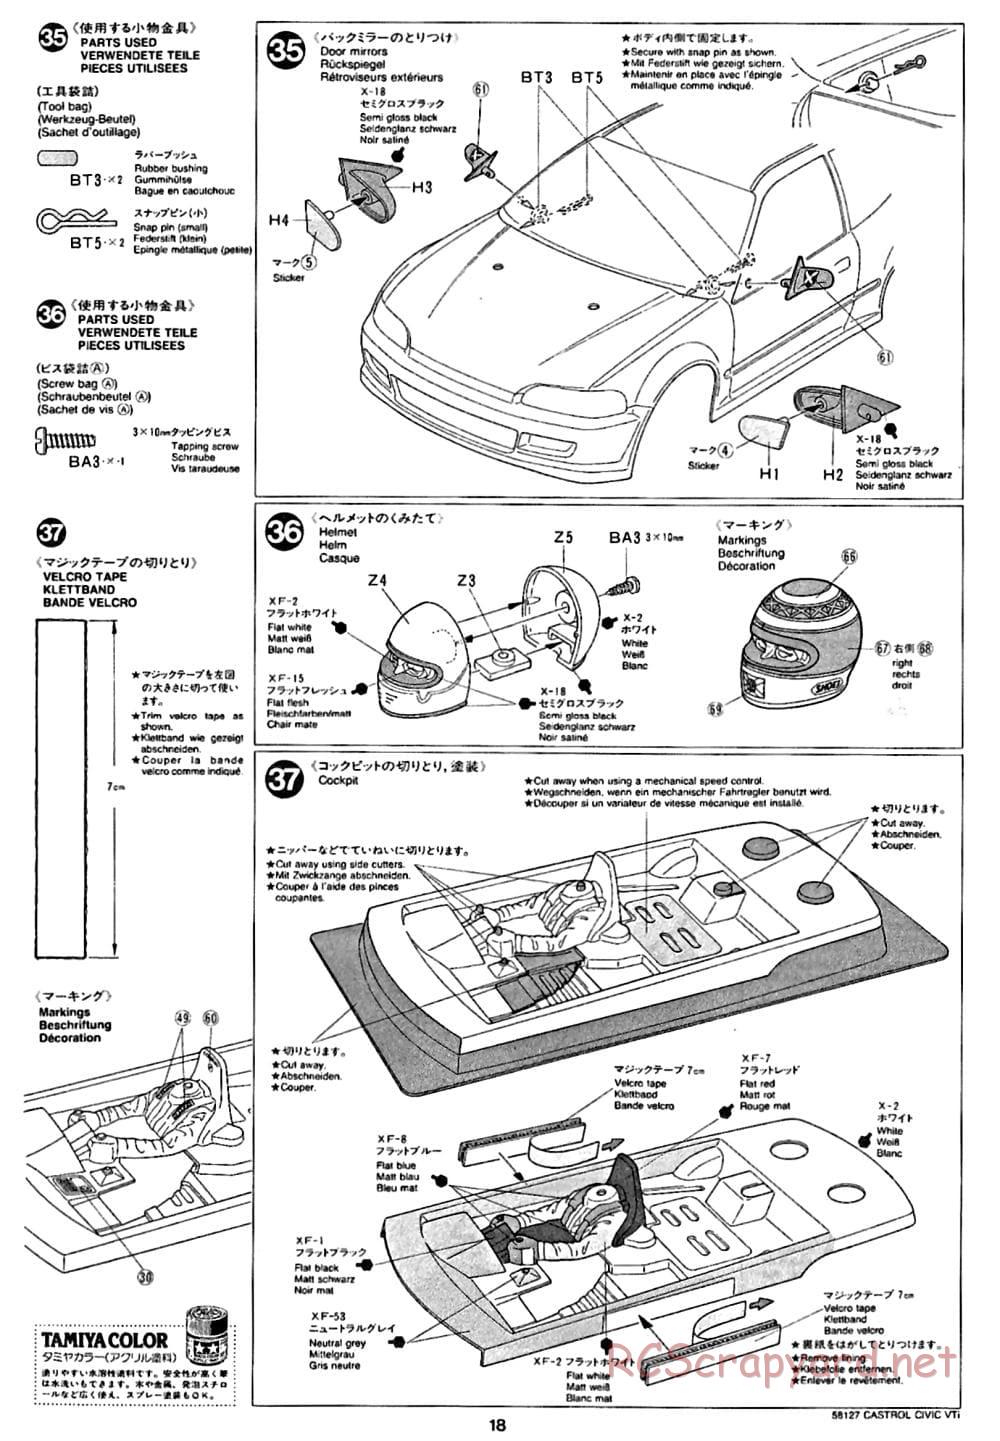 Tamiya - Castrol Honda Civic VTi - FF-01 Chassis - Manual - Page 18